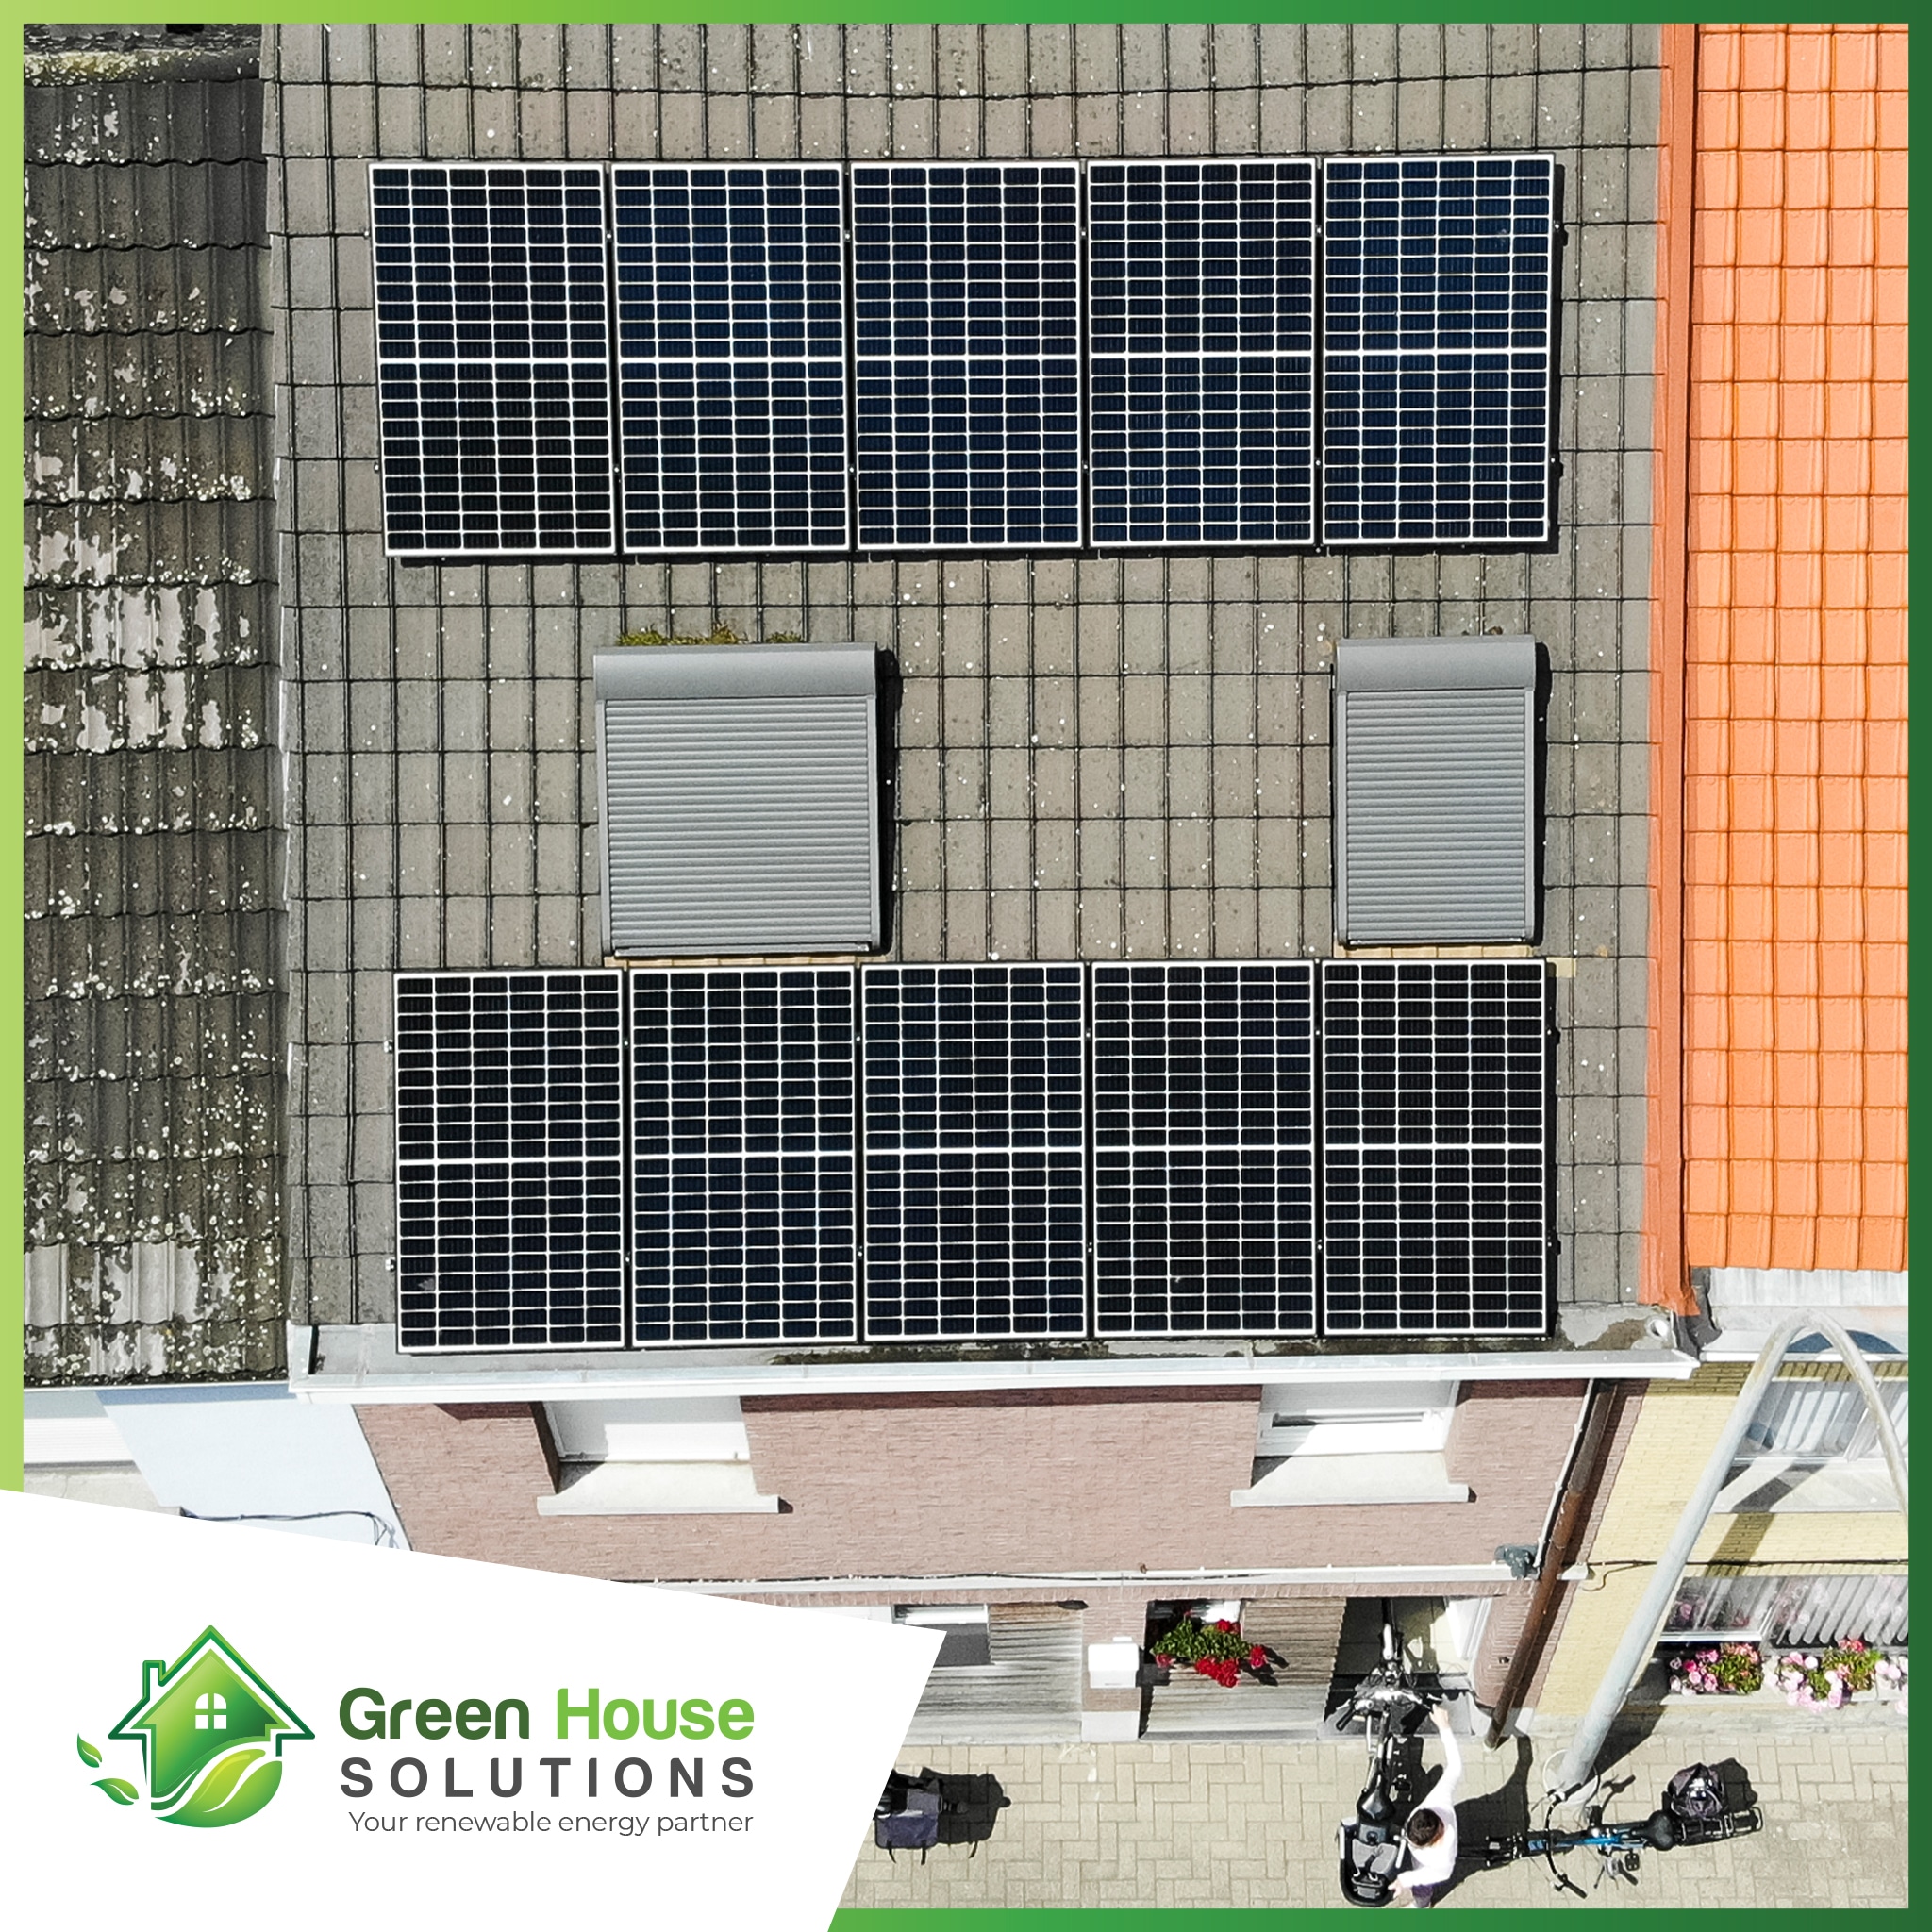 Green House Solutions zonnepanelen plaatsen installeren of kopen 00012